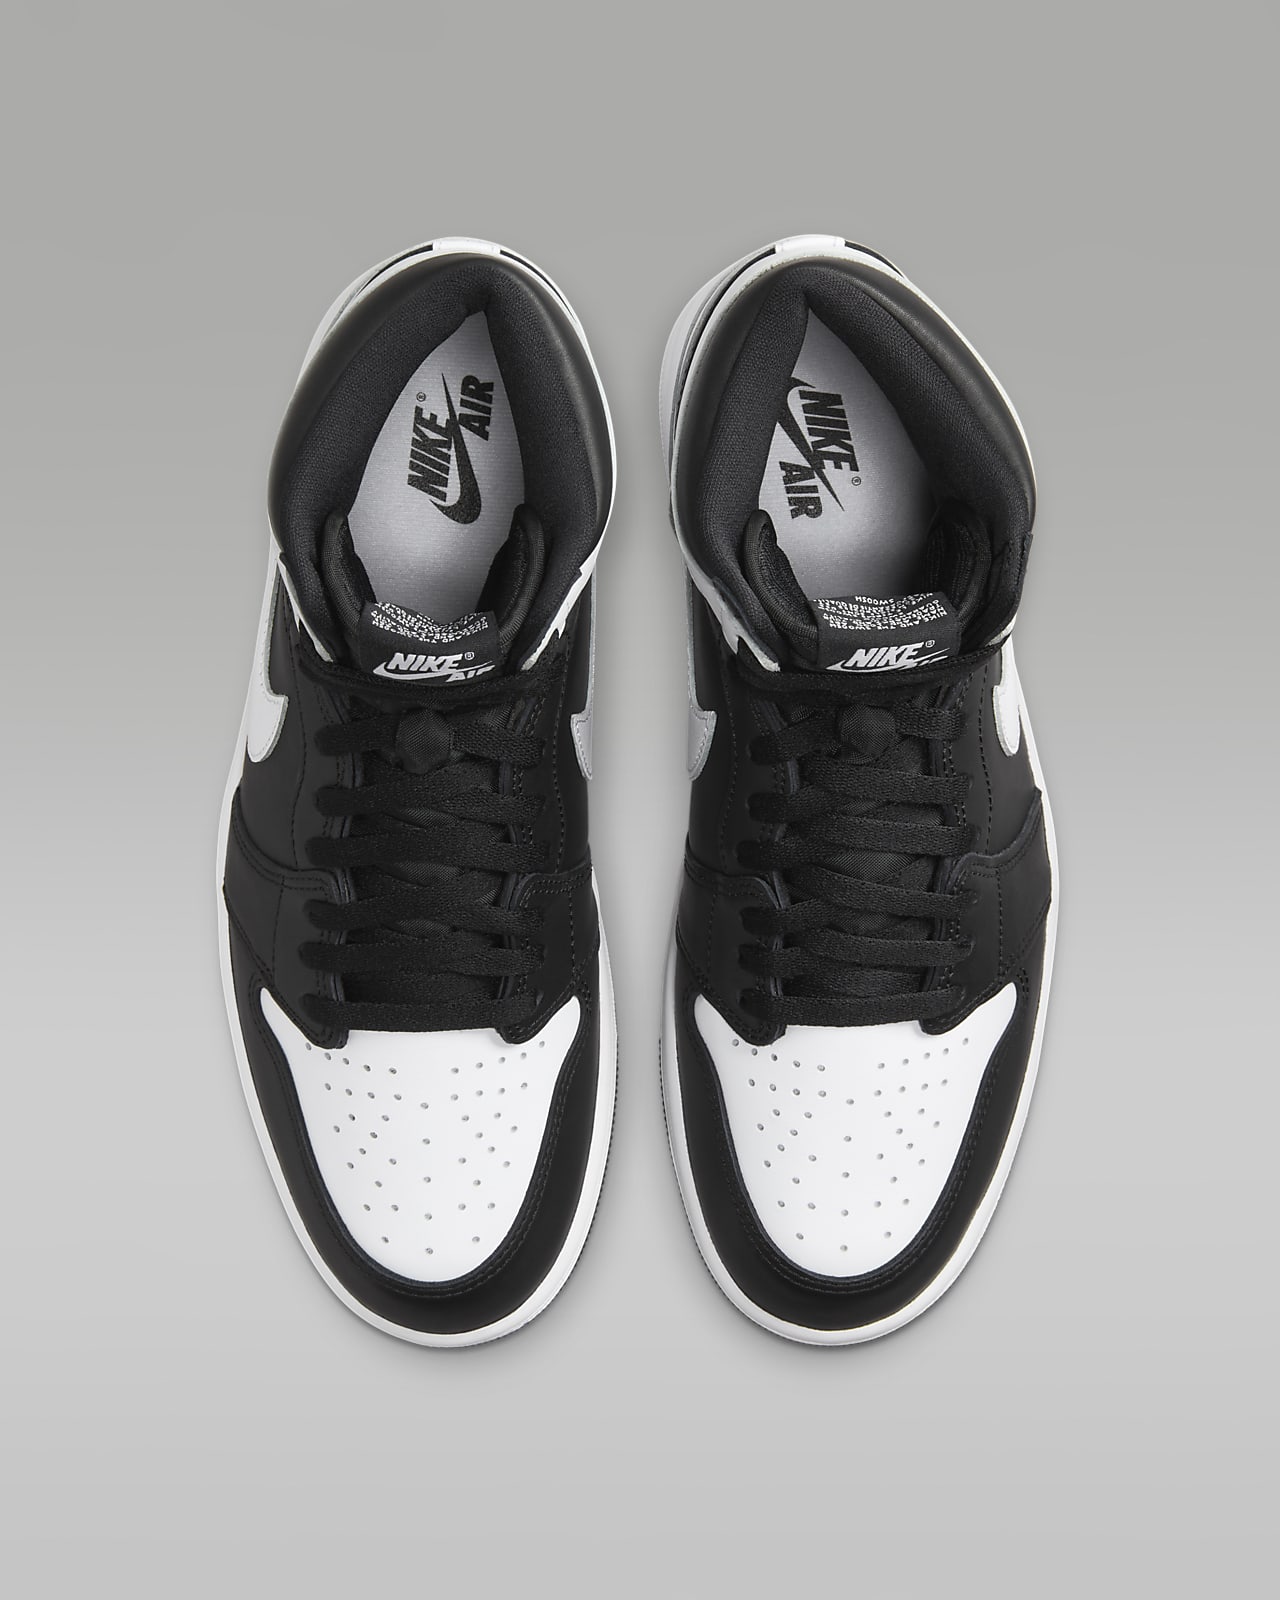 Air Jordan 1 Retro High OG 'Black & White' Men's Shoes. Nike ID